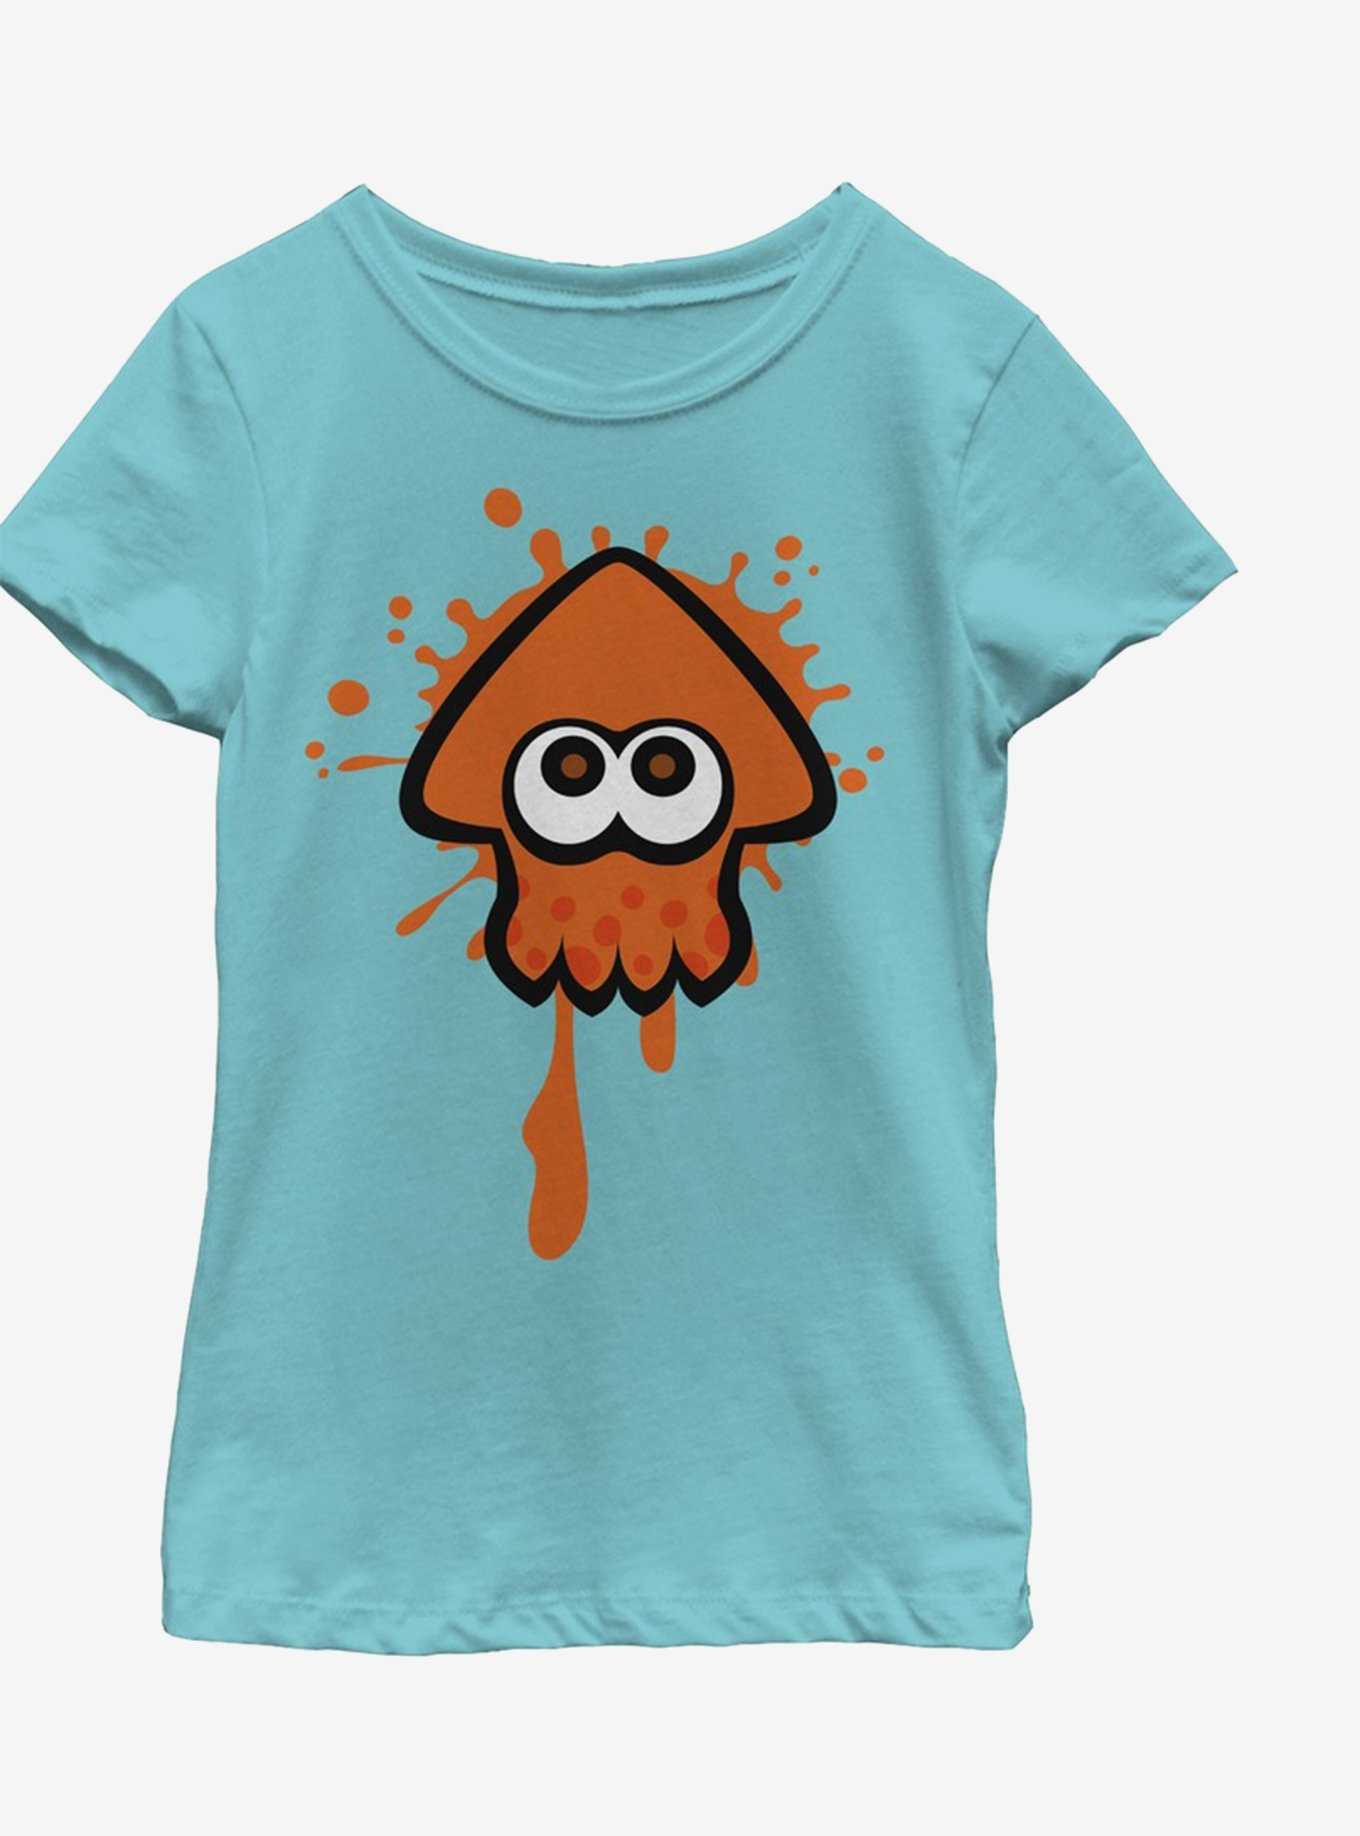 Nintendo Orange Team Youth Girls T-Shirt, , hi-res